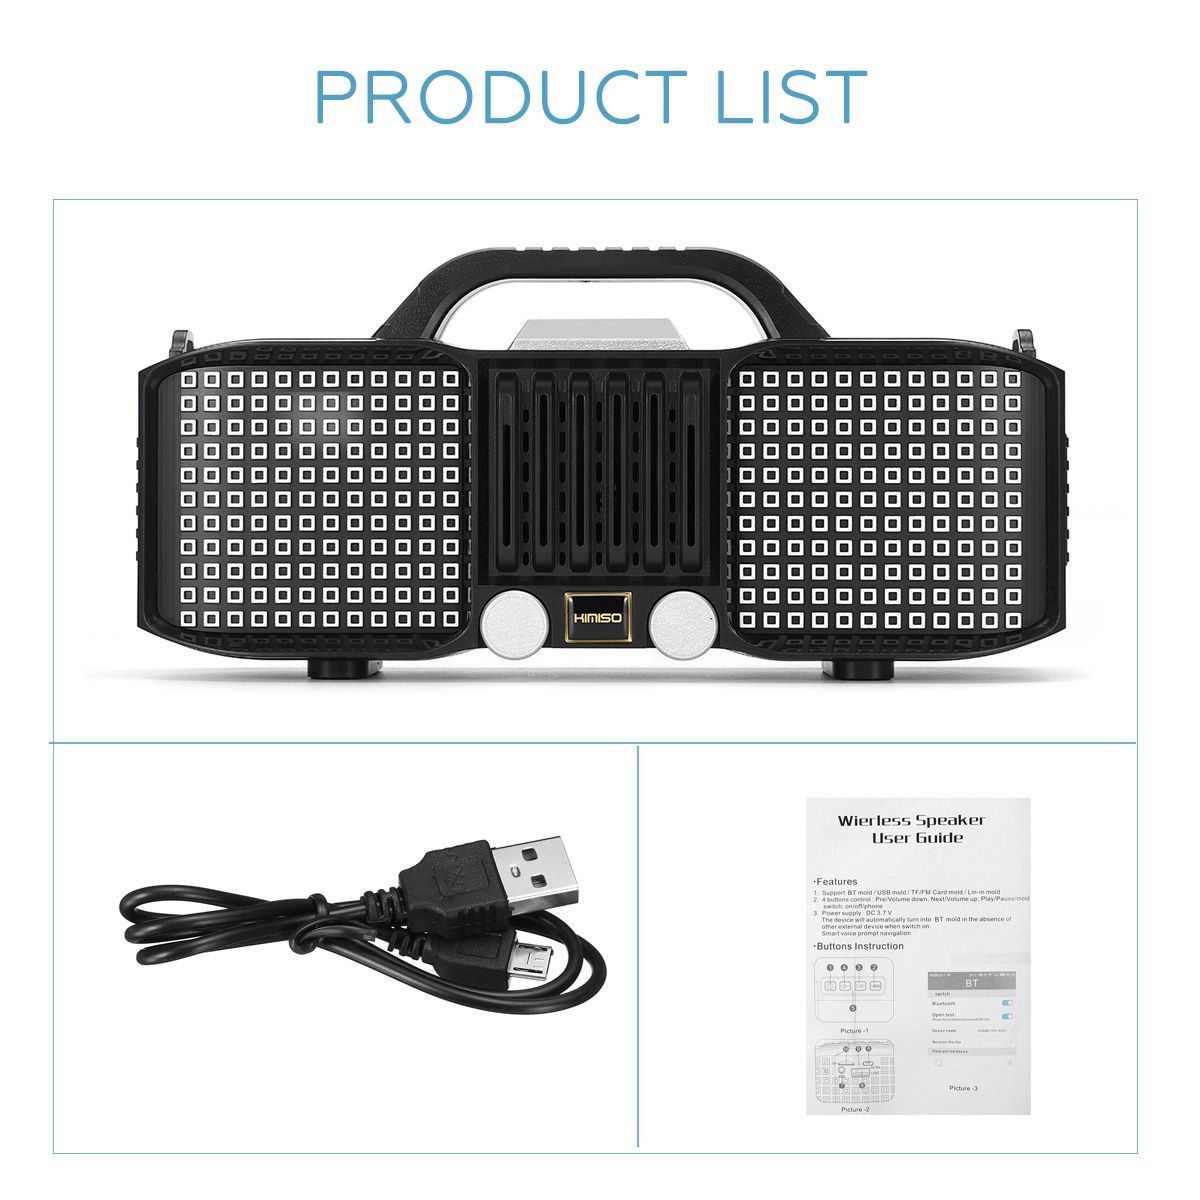 Portable-LED-Light-bluetooth-50-Speaker-Super-Bass-Multiple-Mode-Loudspeaker-with-Mic-1582011